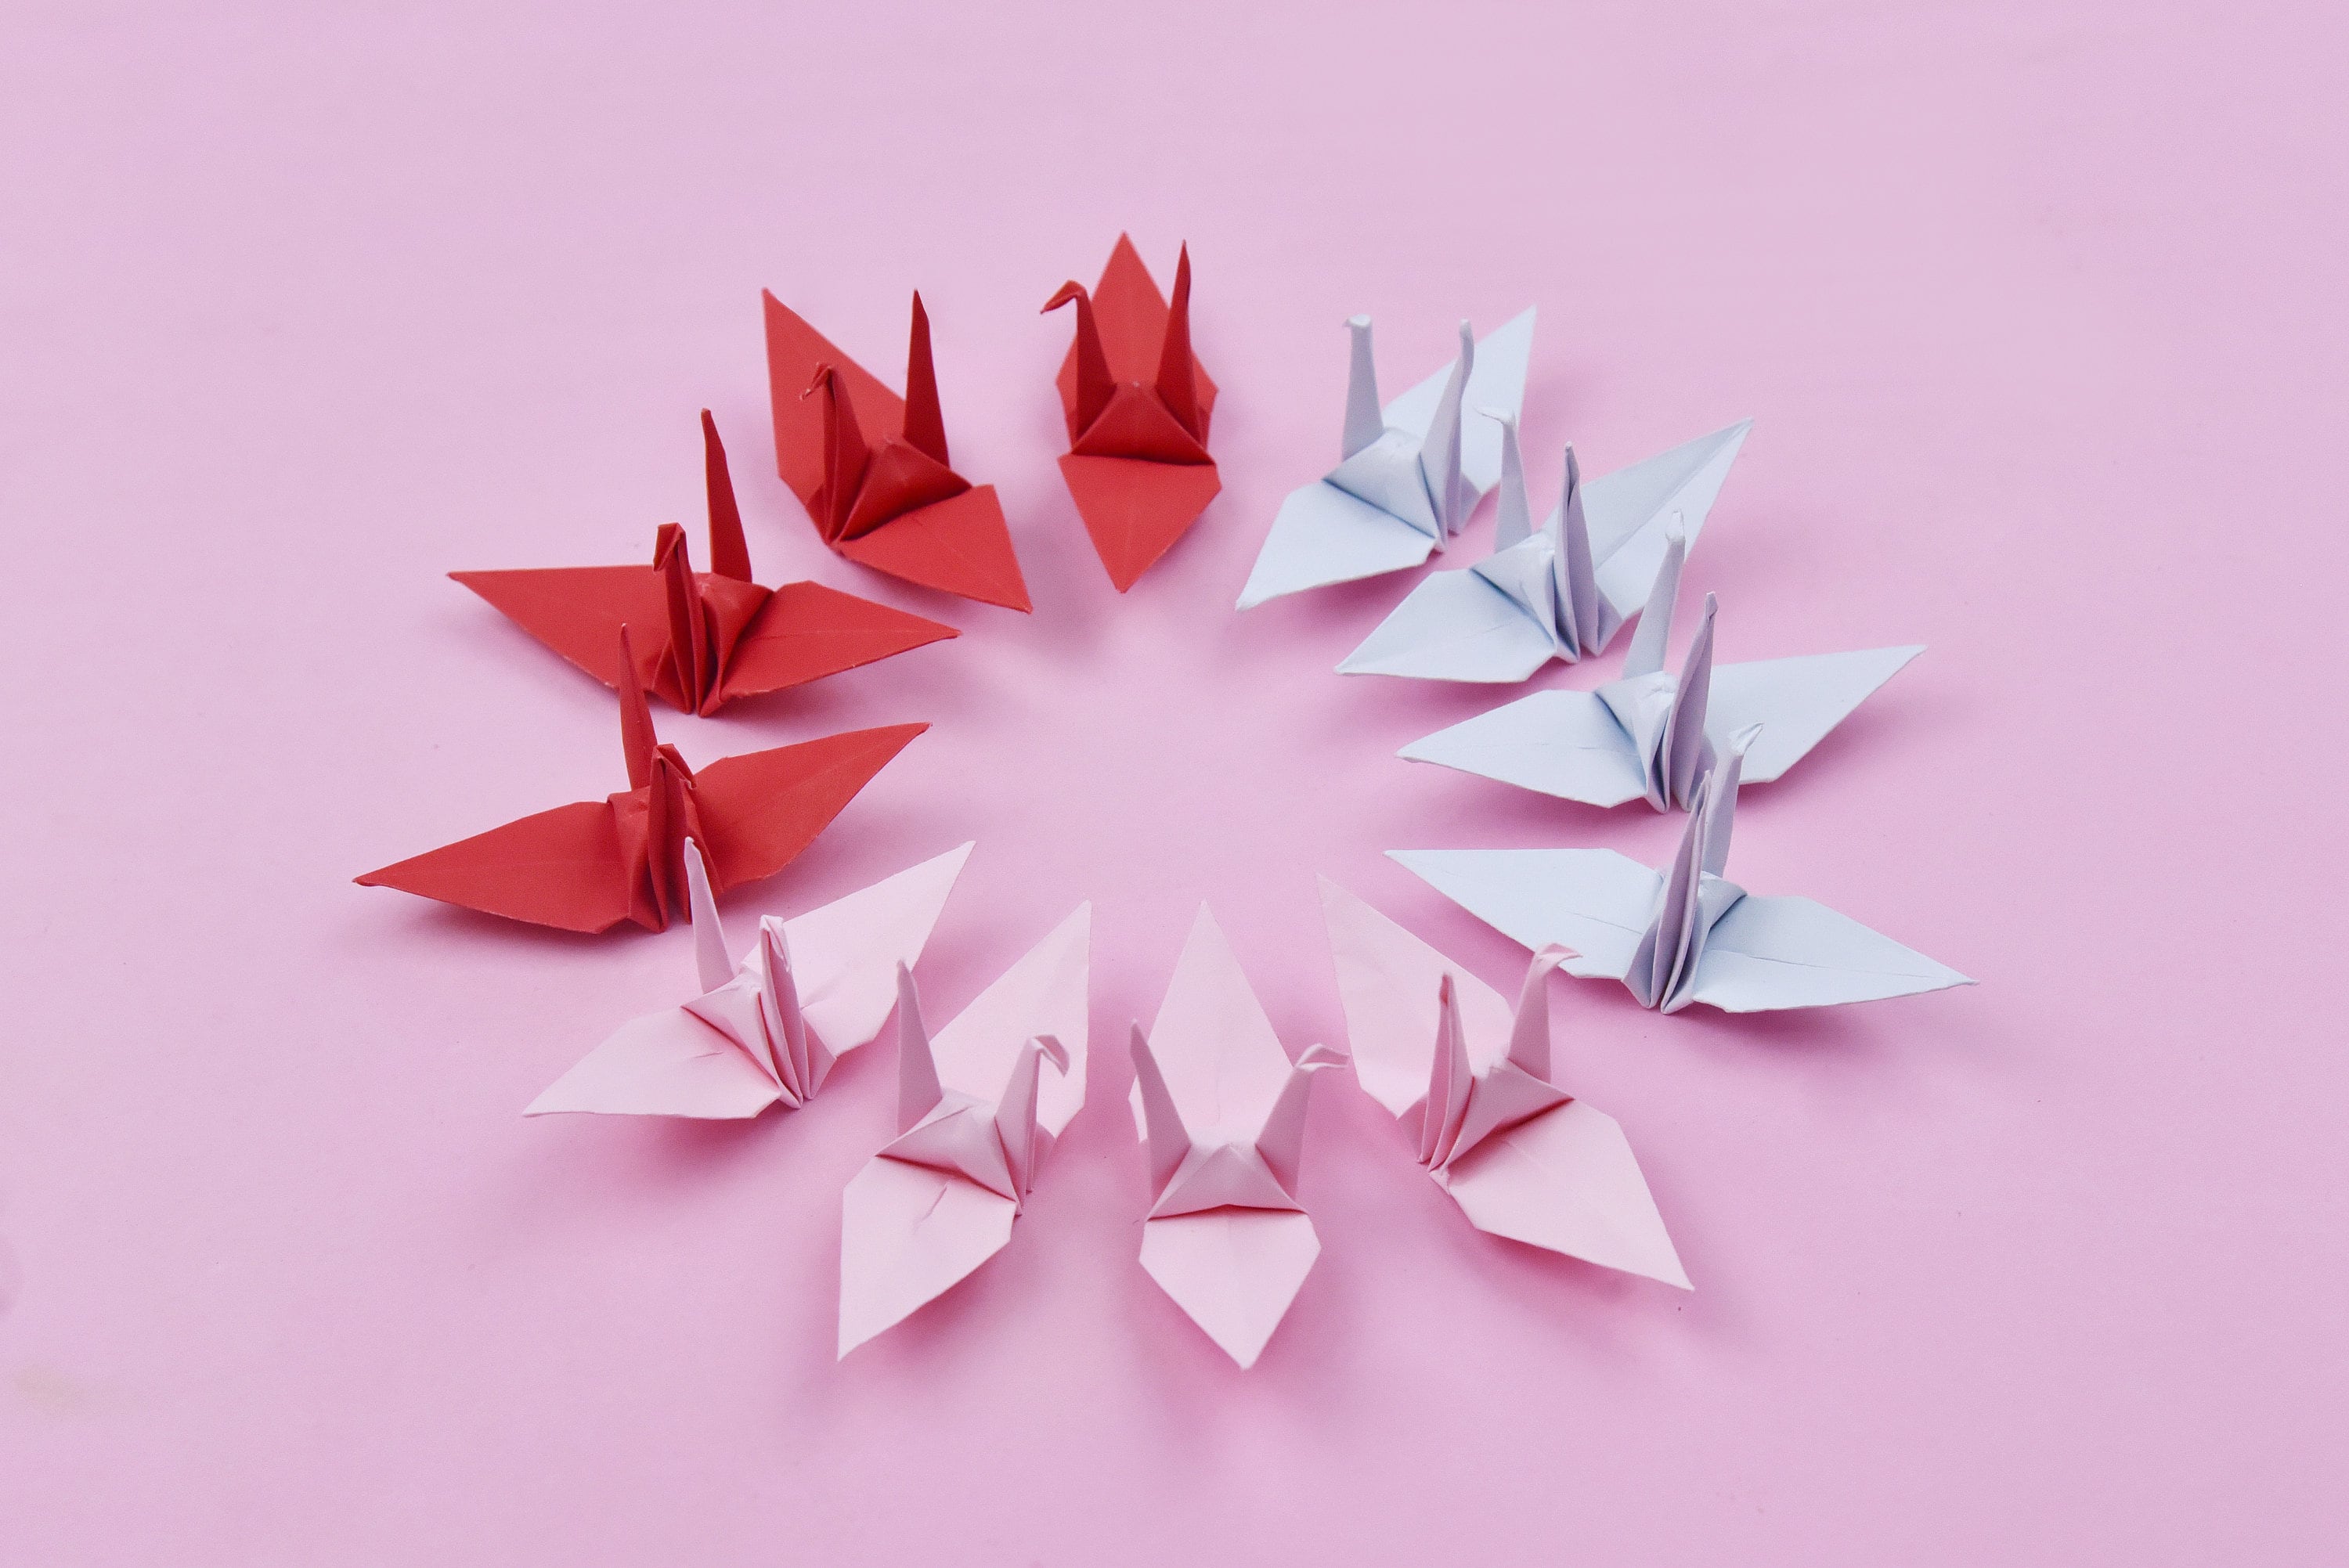 1000 gru di carta origami - tonalità rosa rossa - realizzate in 7,5 cm (3x3 pollici) - decorazione di nozze, matrimonio giapponese, San Valentino